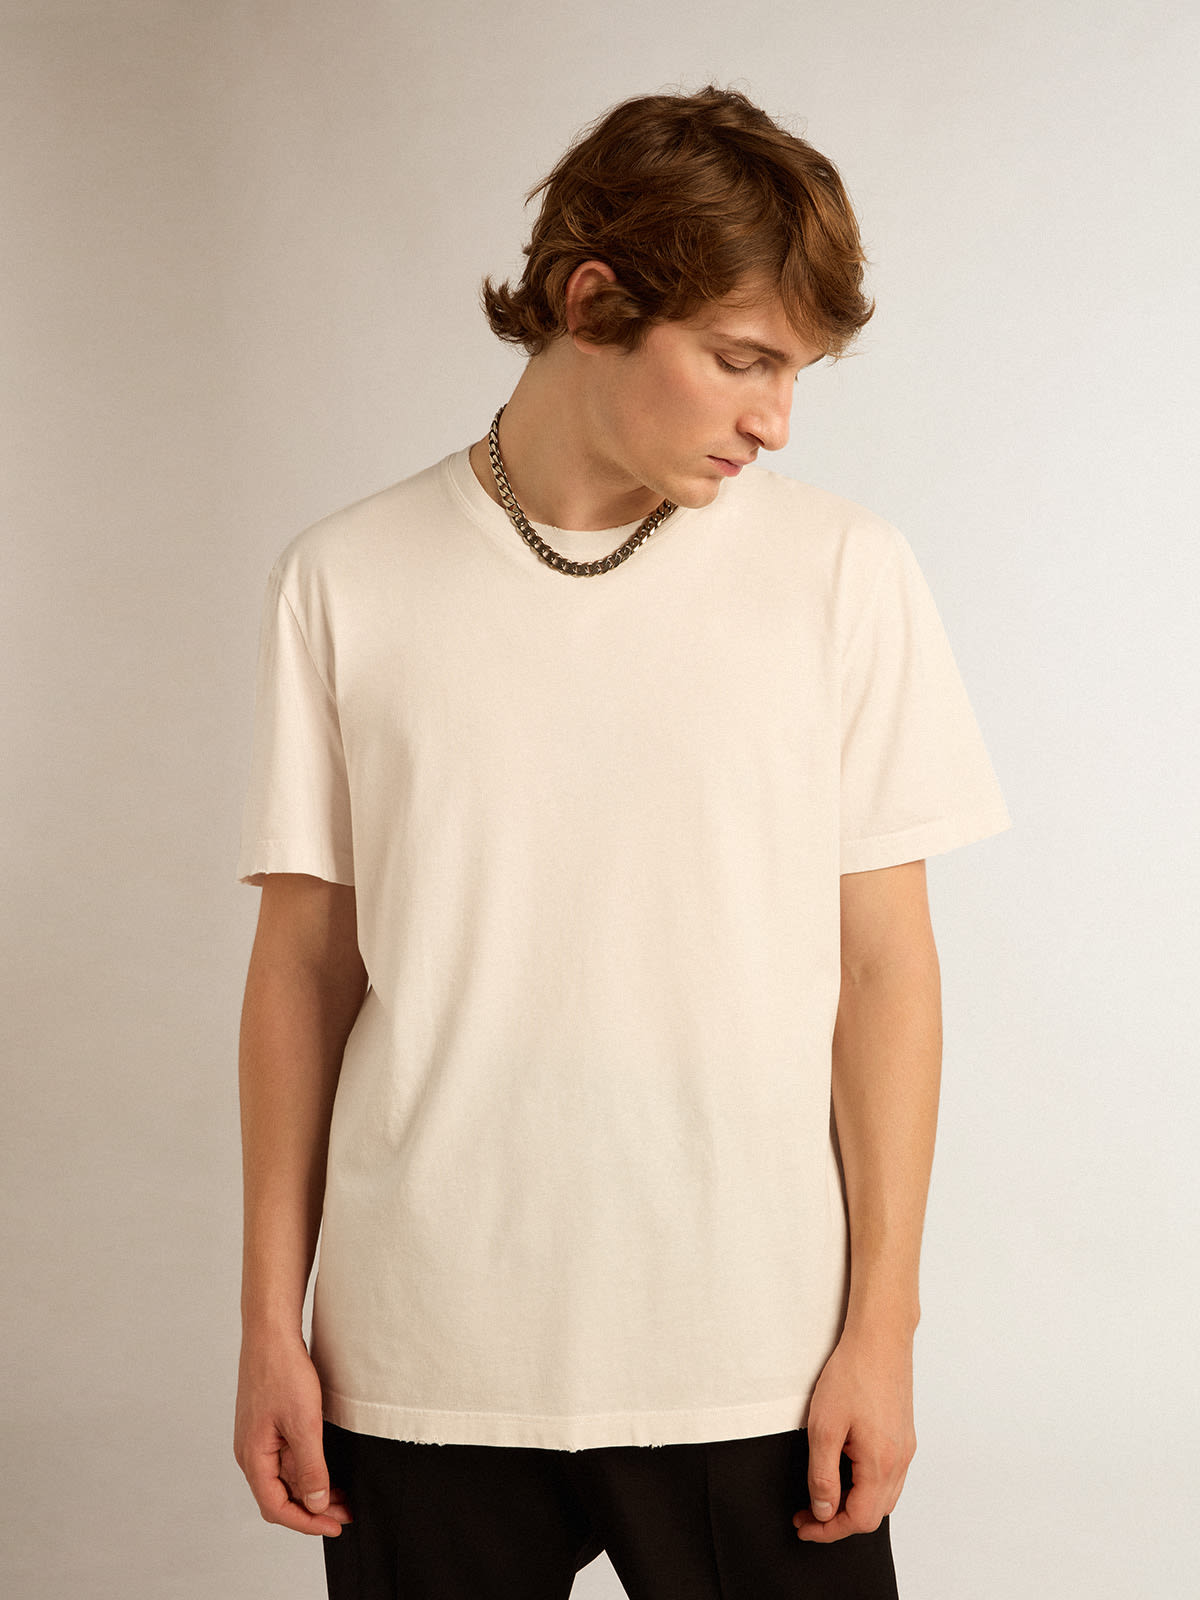 Golden Goose - Weißes T-Shirt aus der Golden Collection mit Distressed-Finish in 